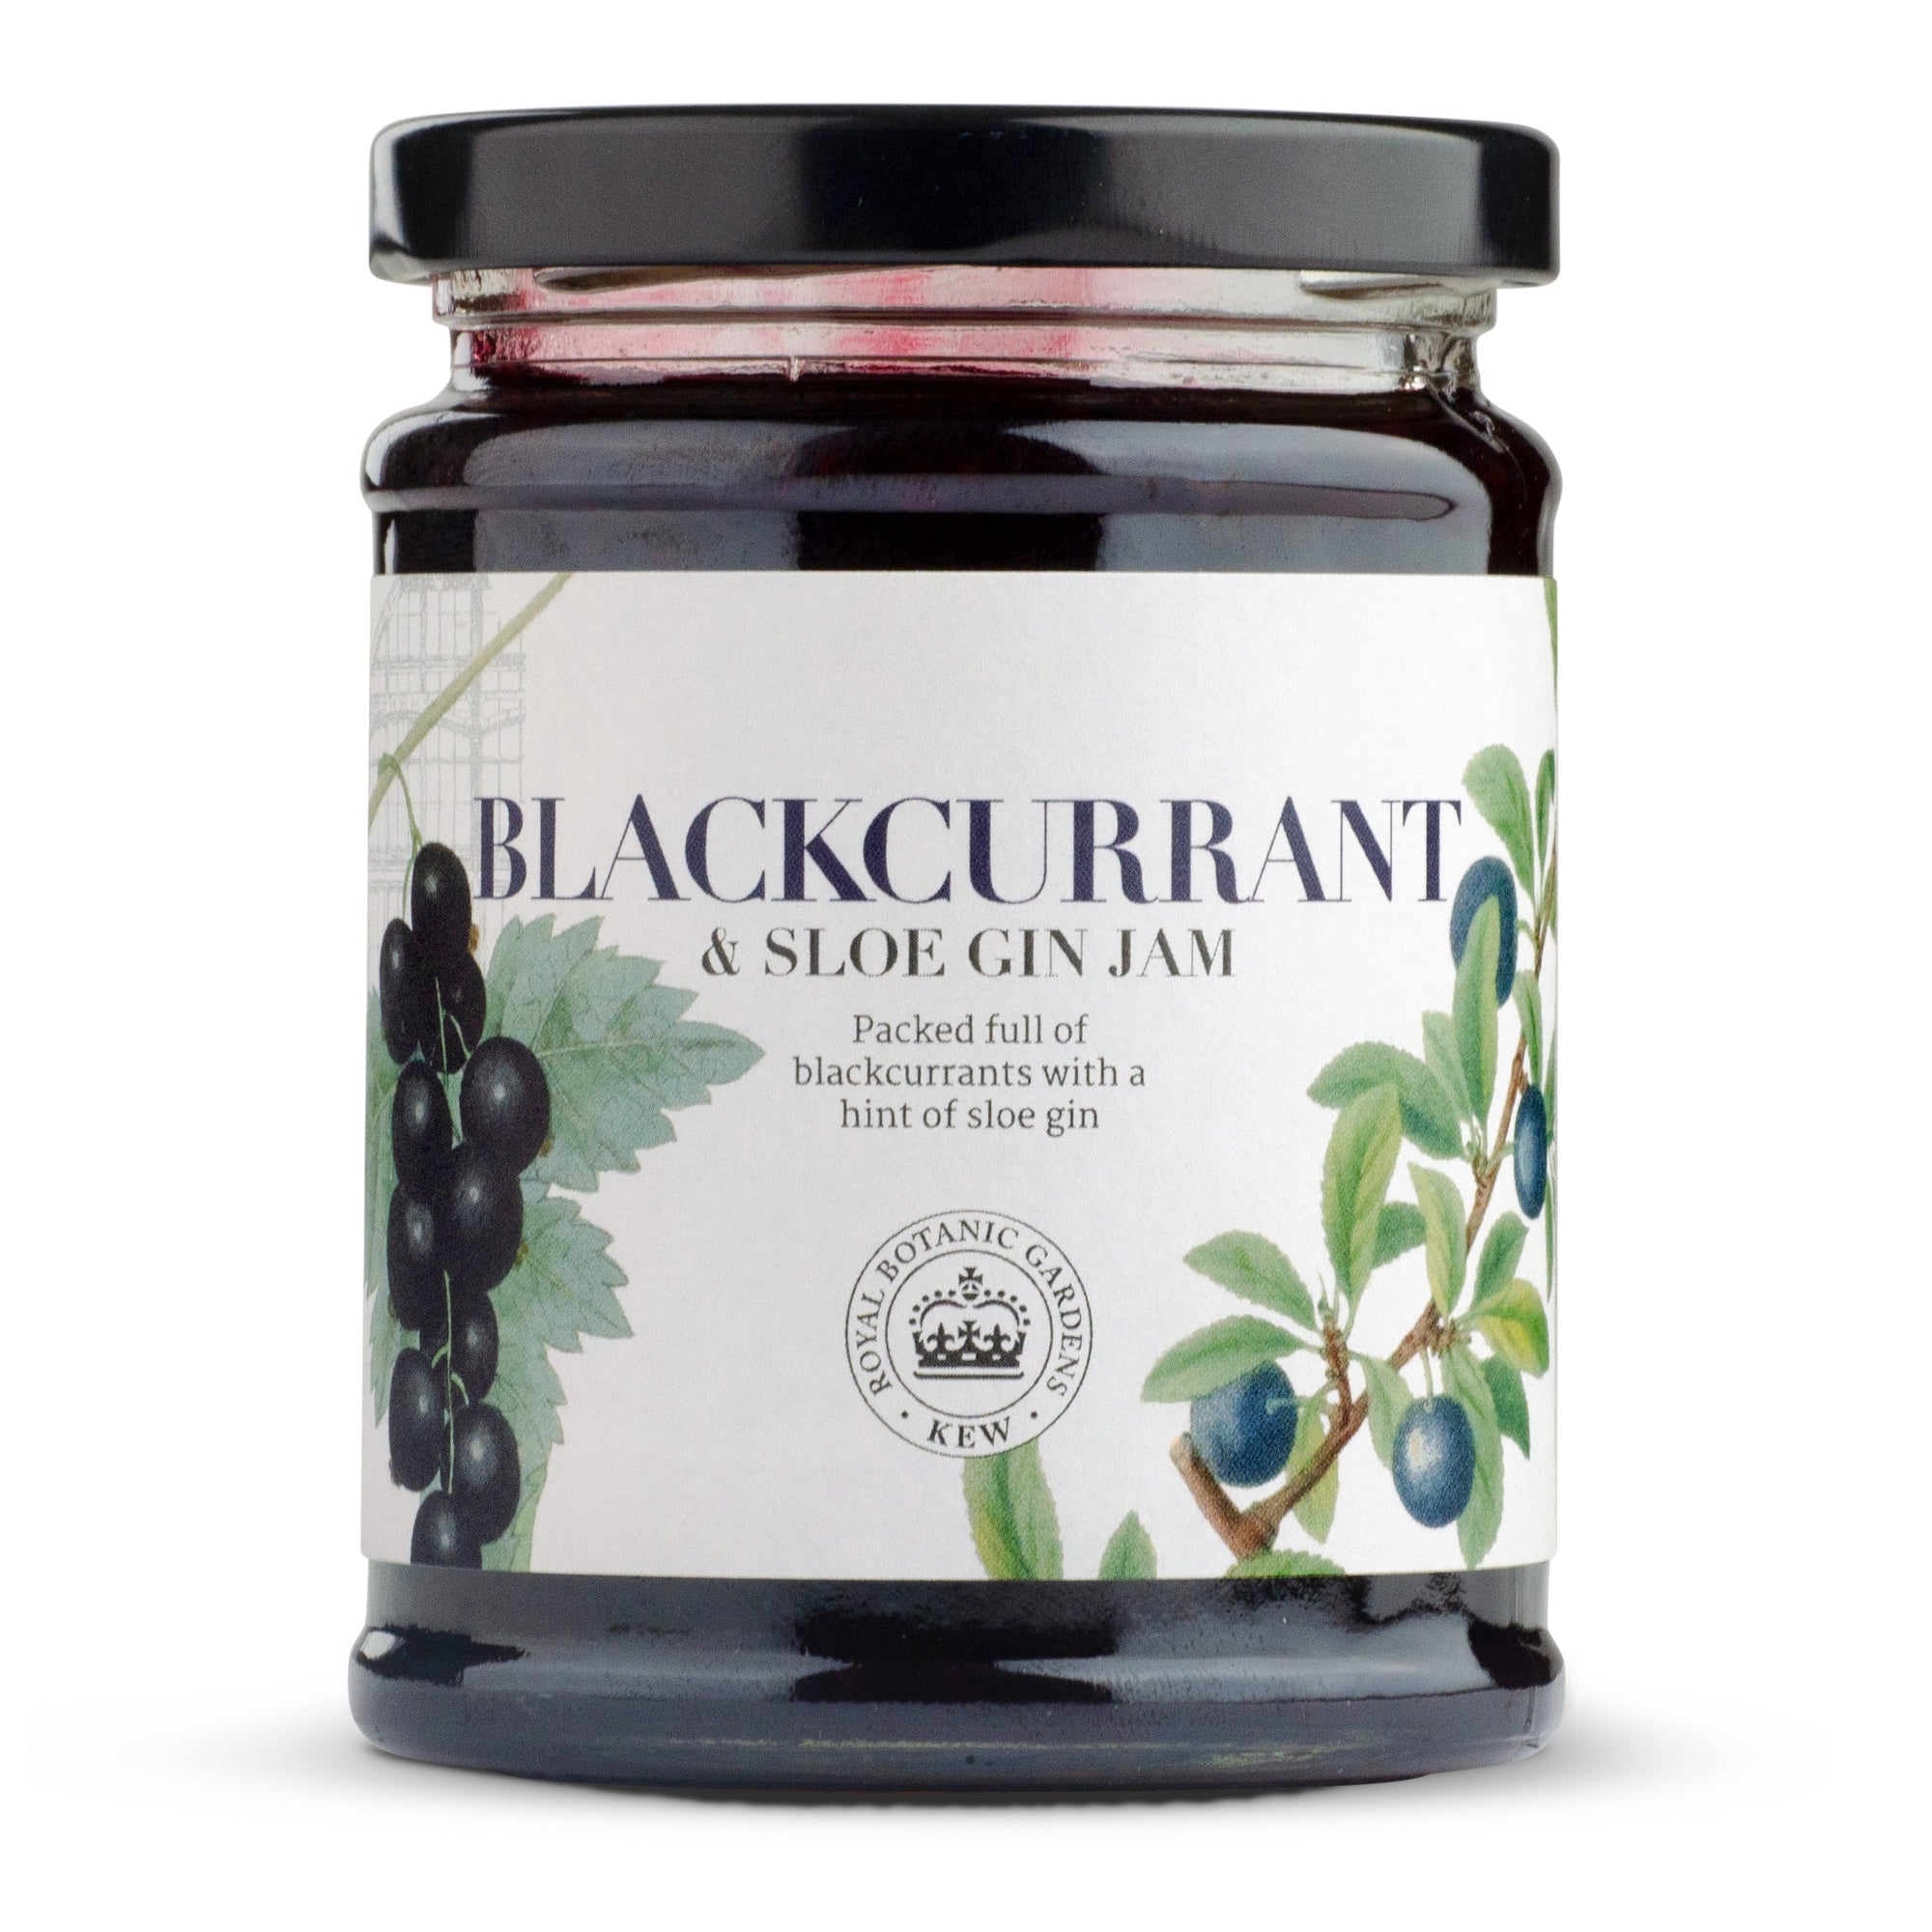 Blackcurrant & Sloe Gin Jam - Cherry Tree Preserves UK